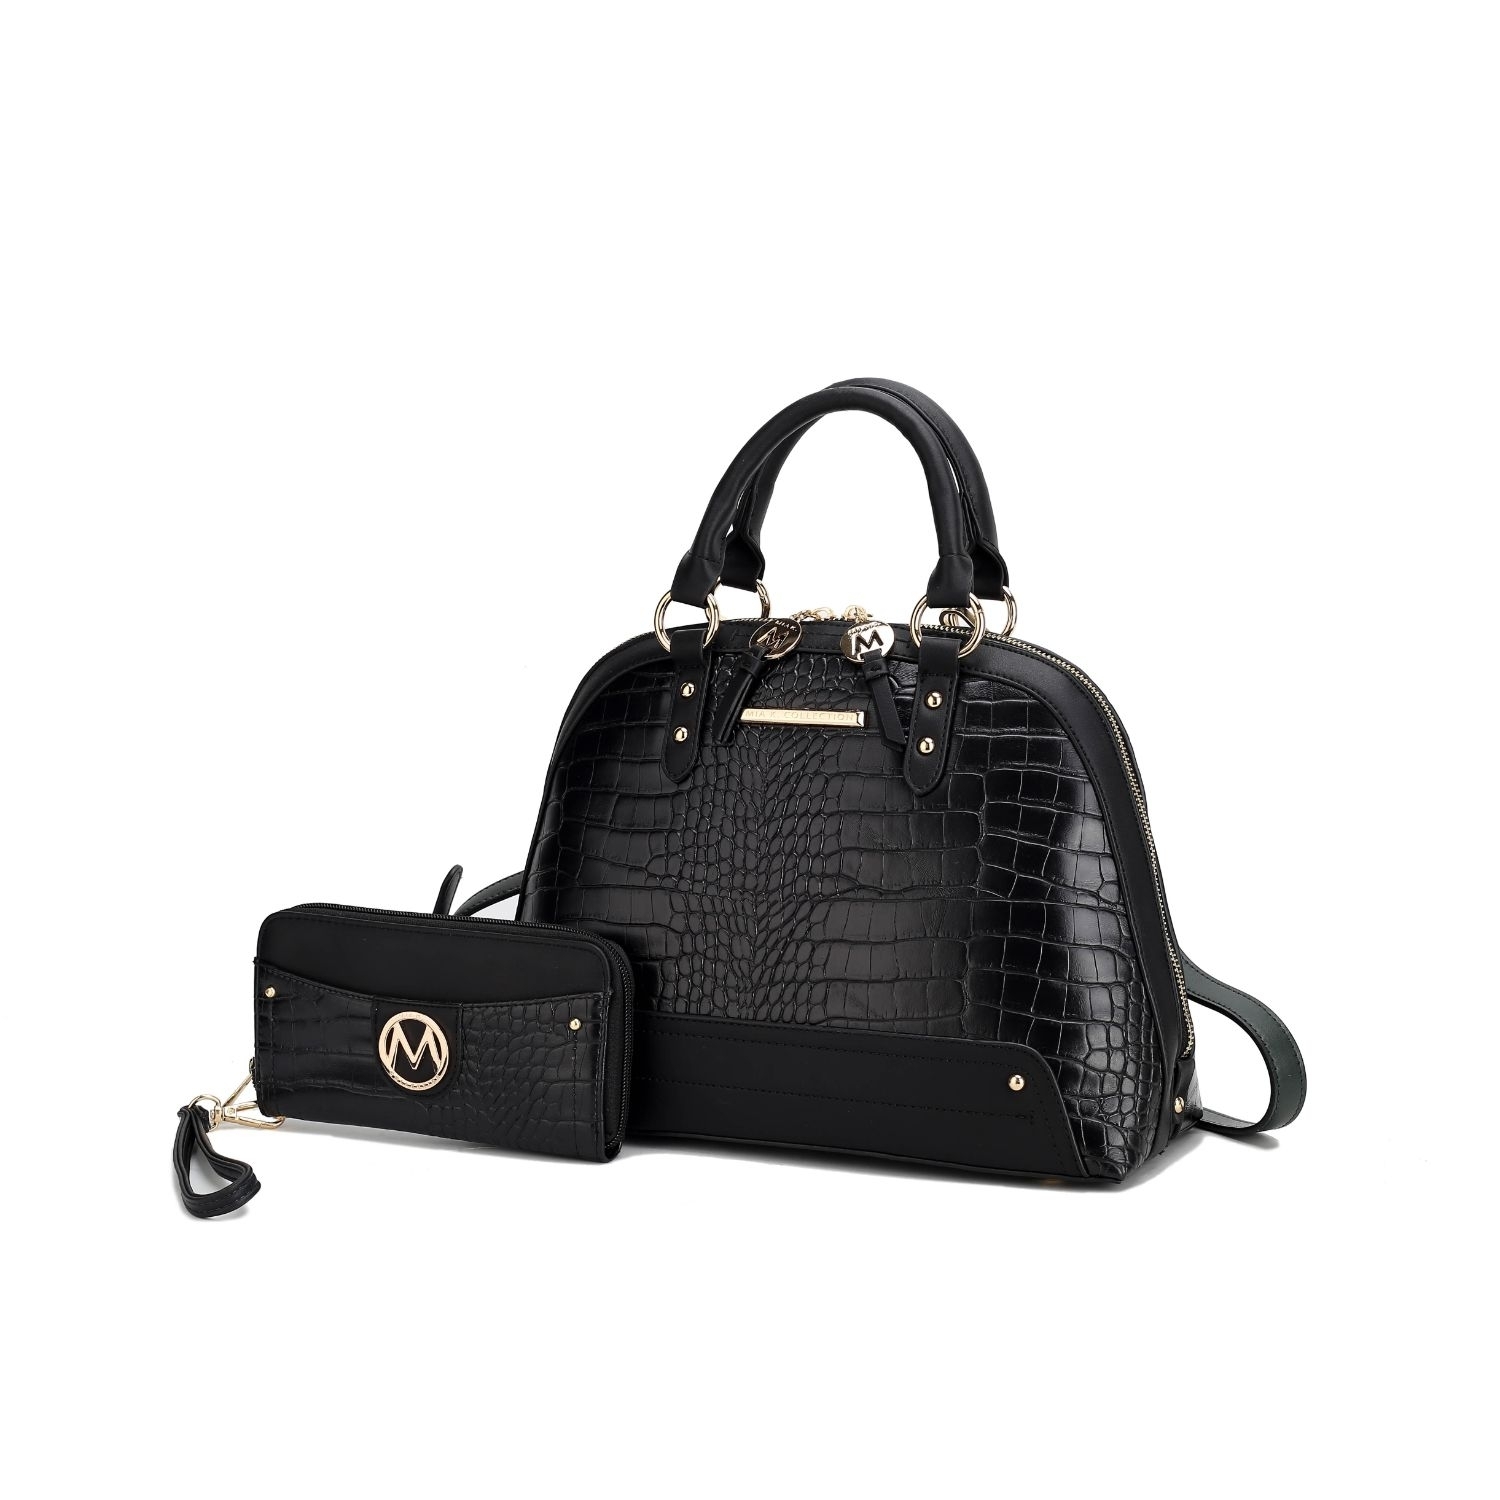 MKF Collection Nora Croco Satchel Handbag By Mia K. - Black